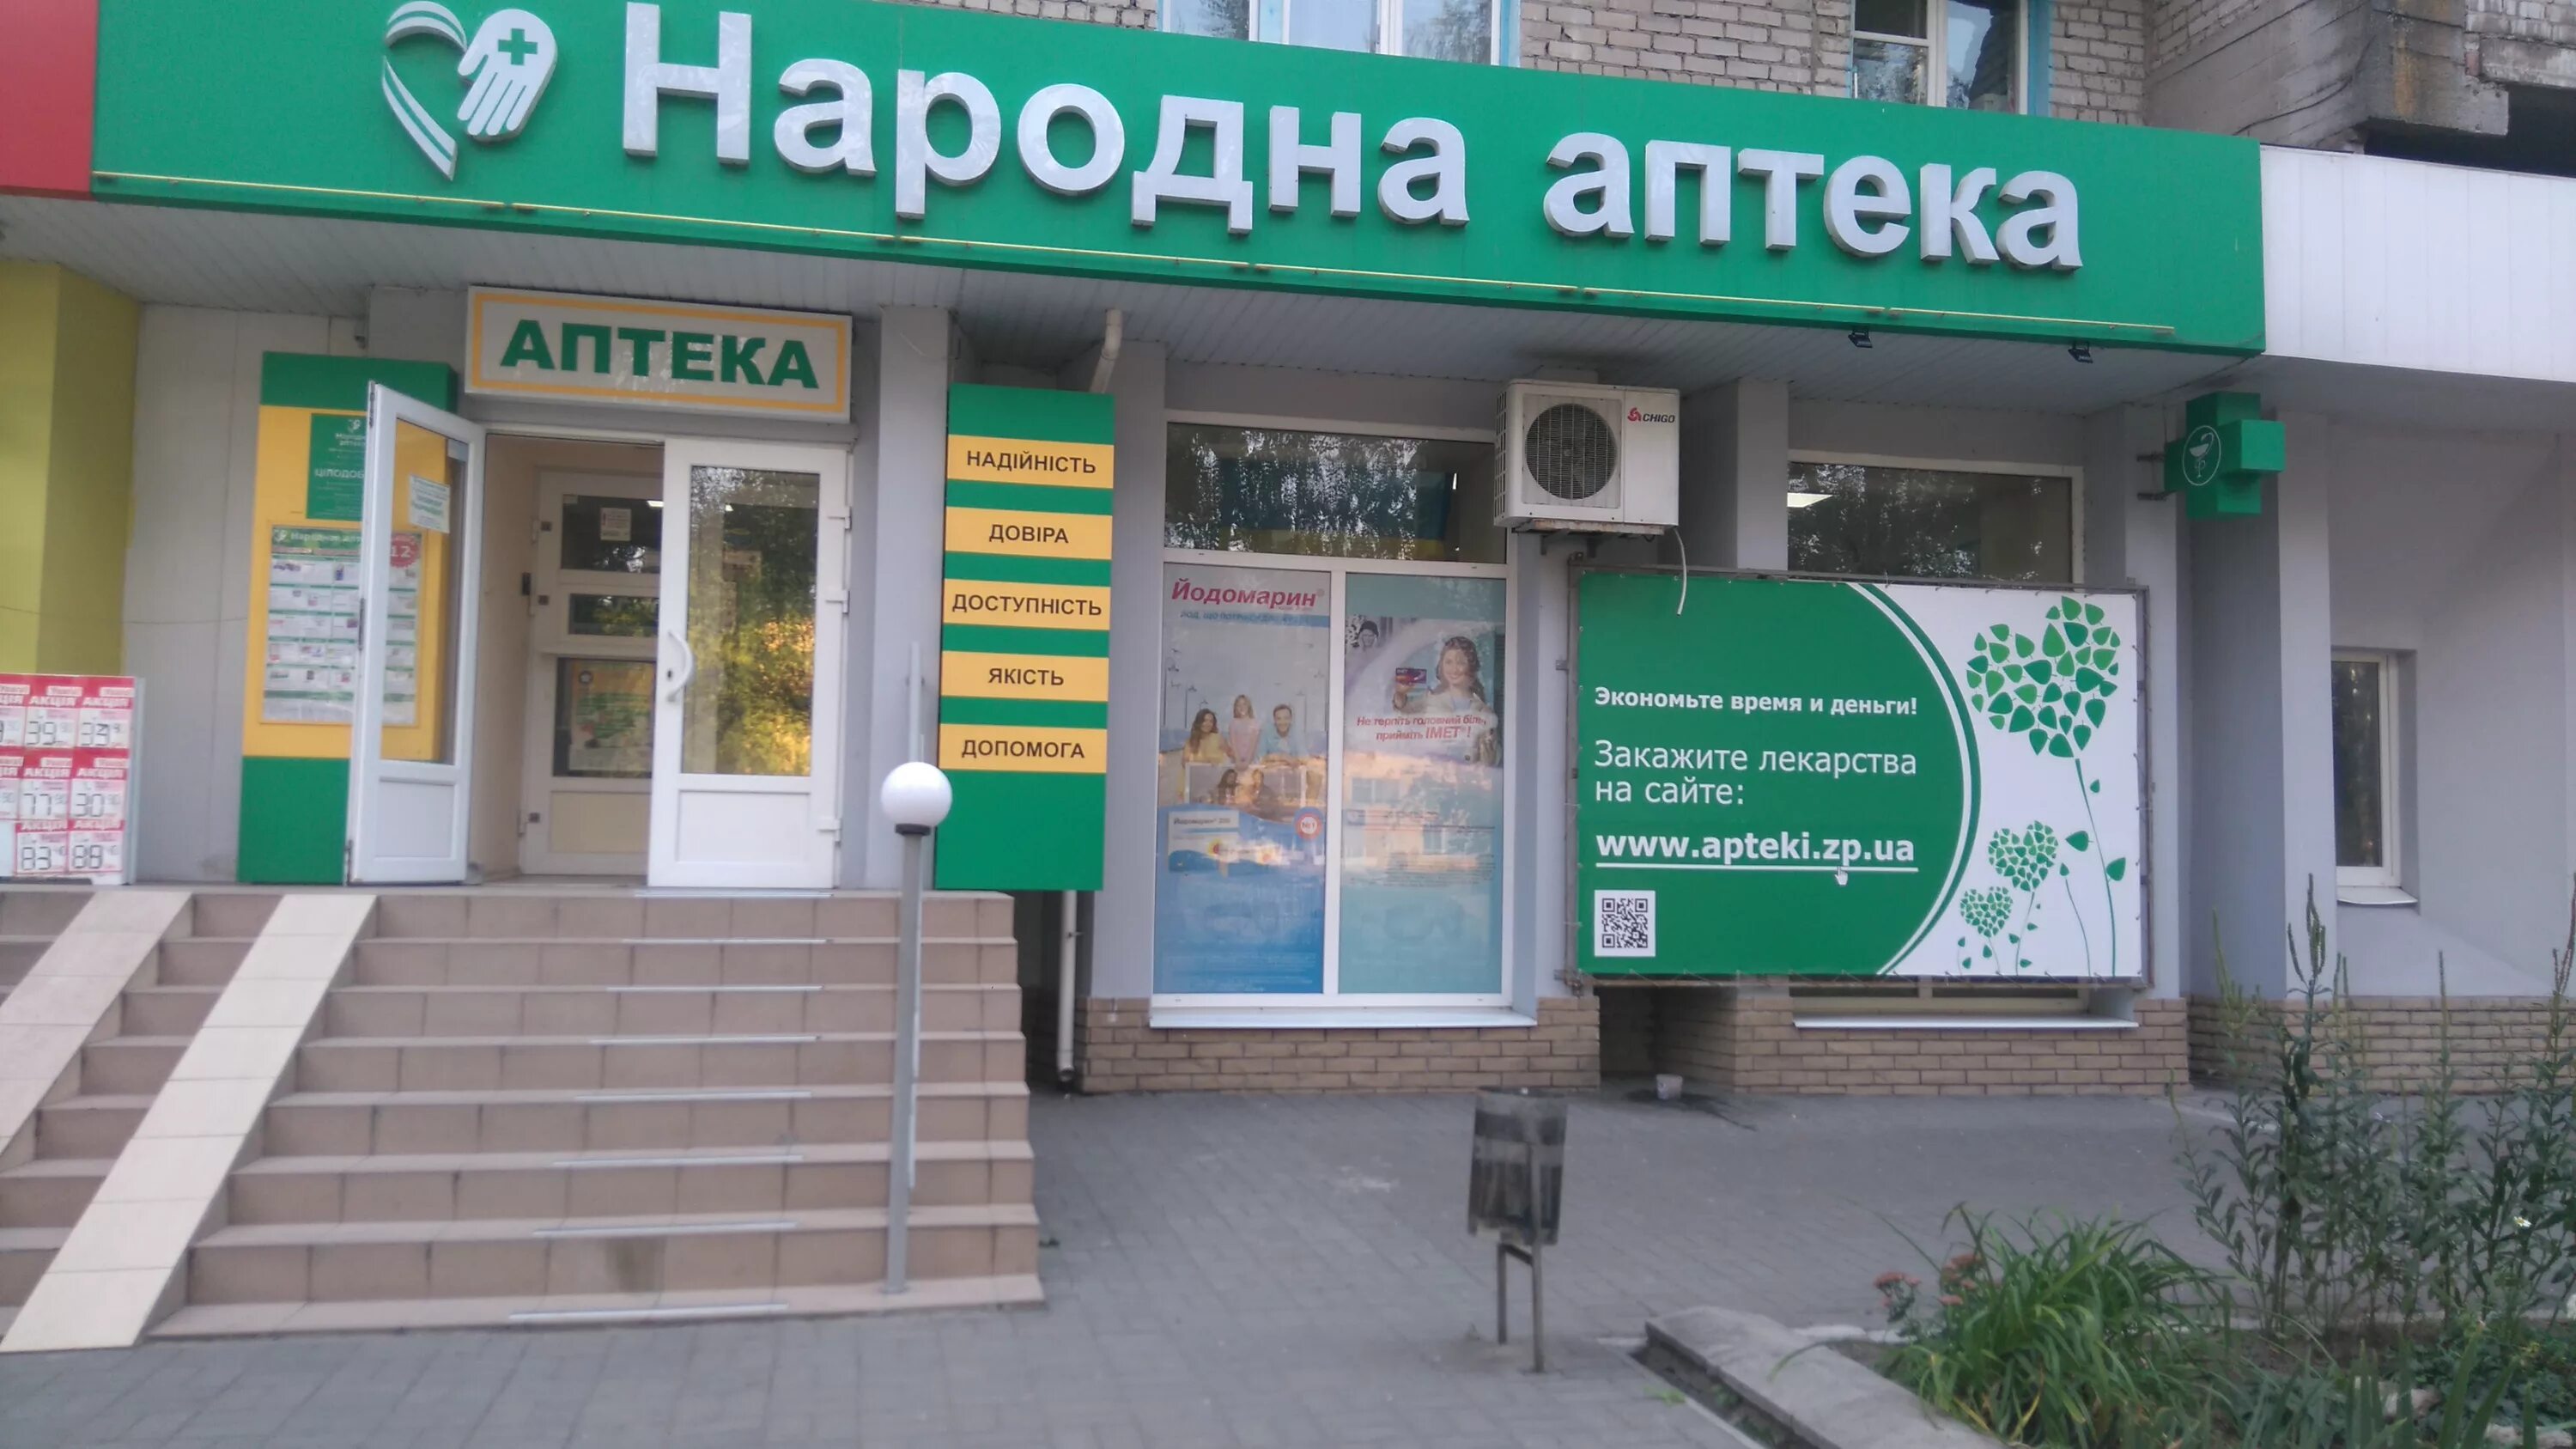 Народная аптека телефон. Народная аптека. Народная аптека Донецк. Народная аптека логотип. Народная 3 аптека.